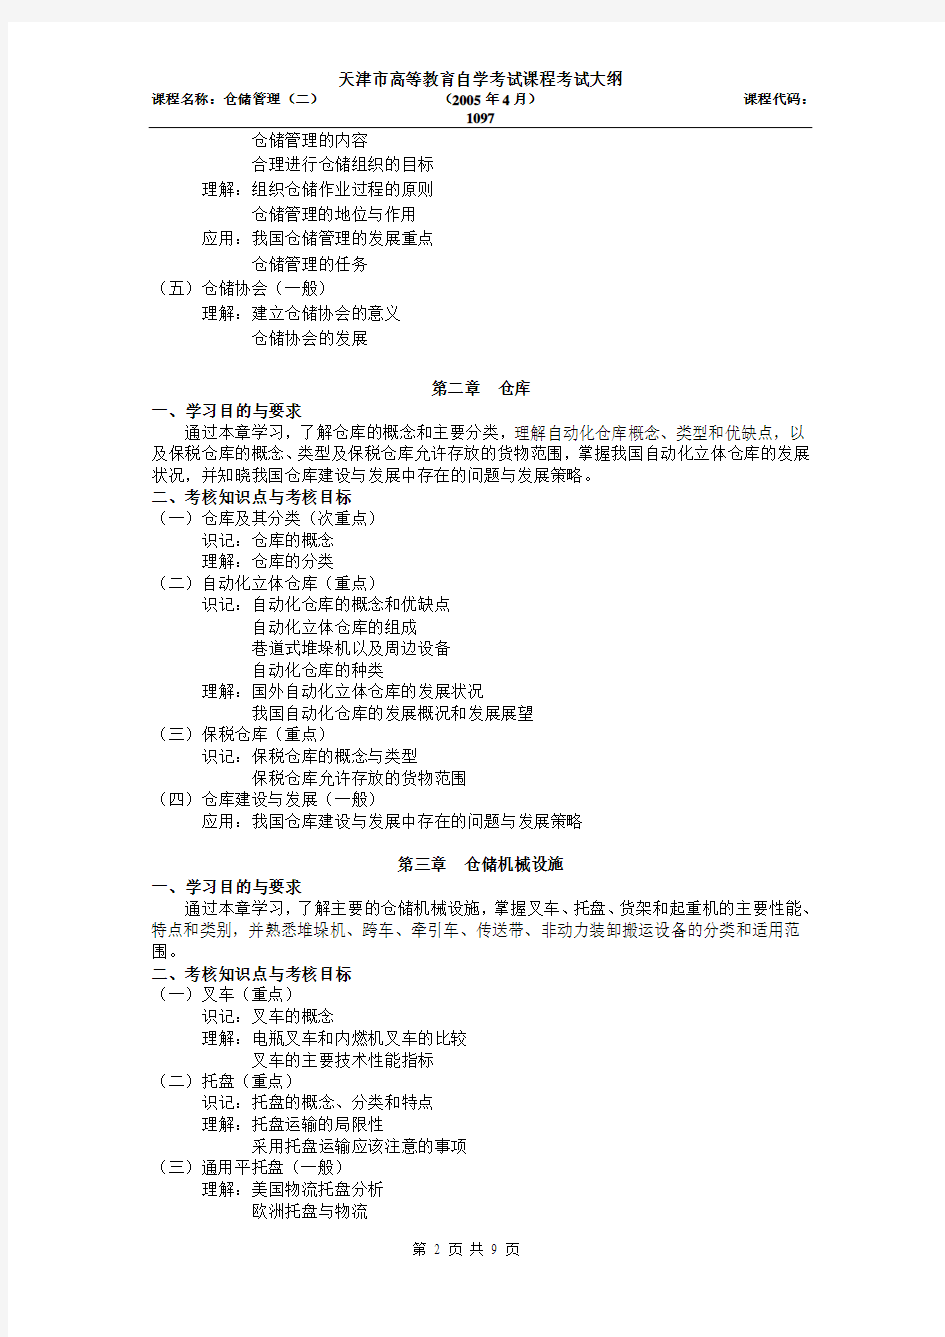 天津2012年自考“仓储管理(二)”课程考试大纲